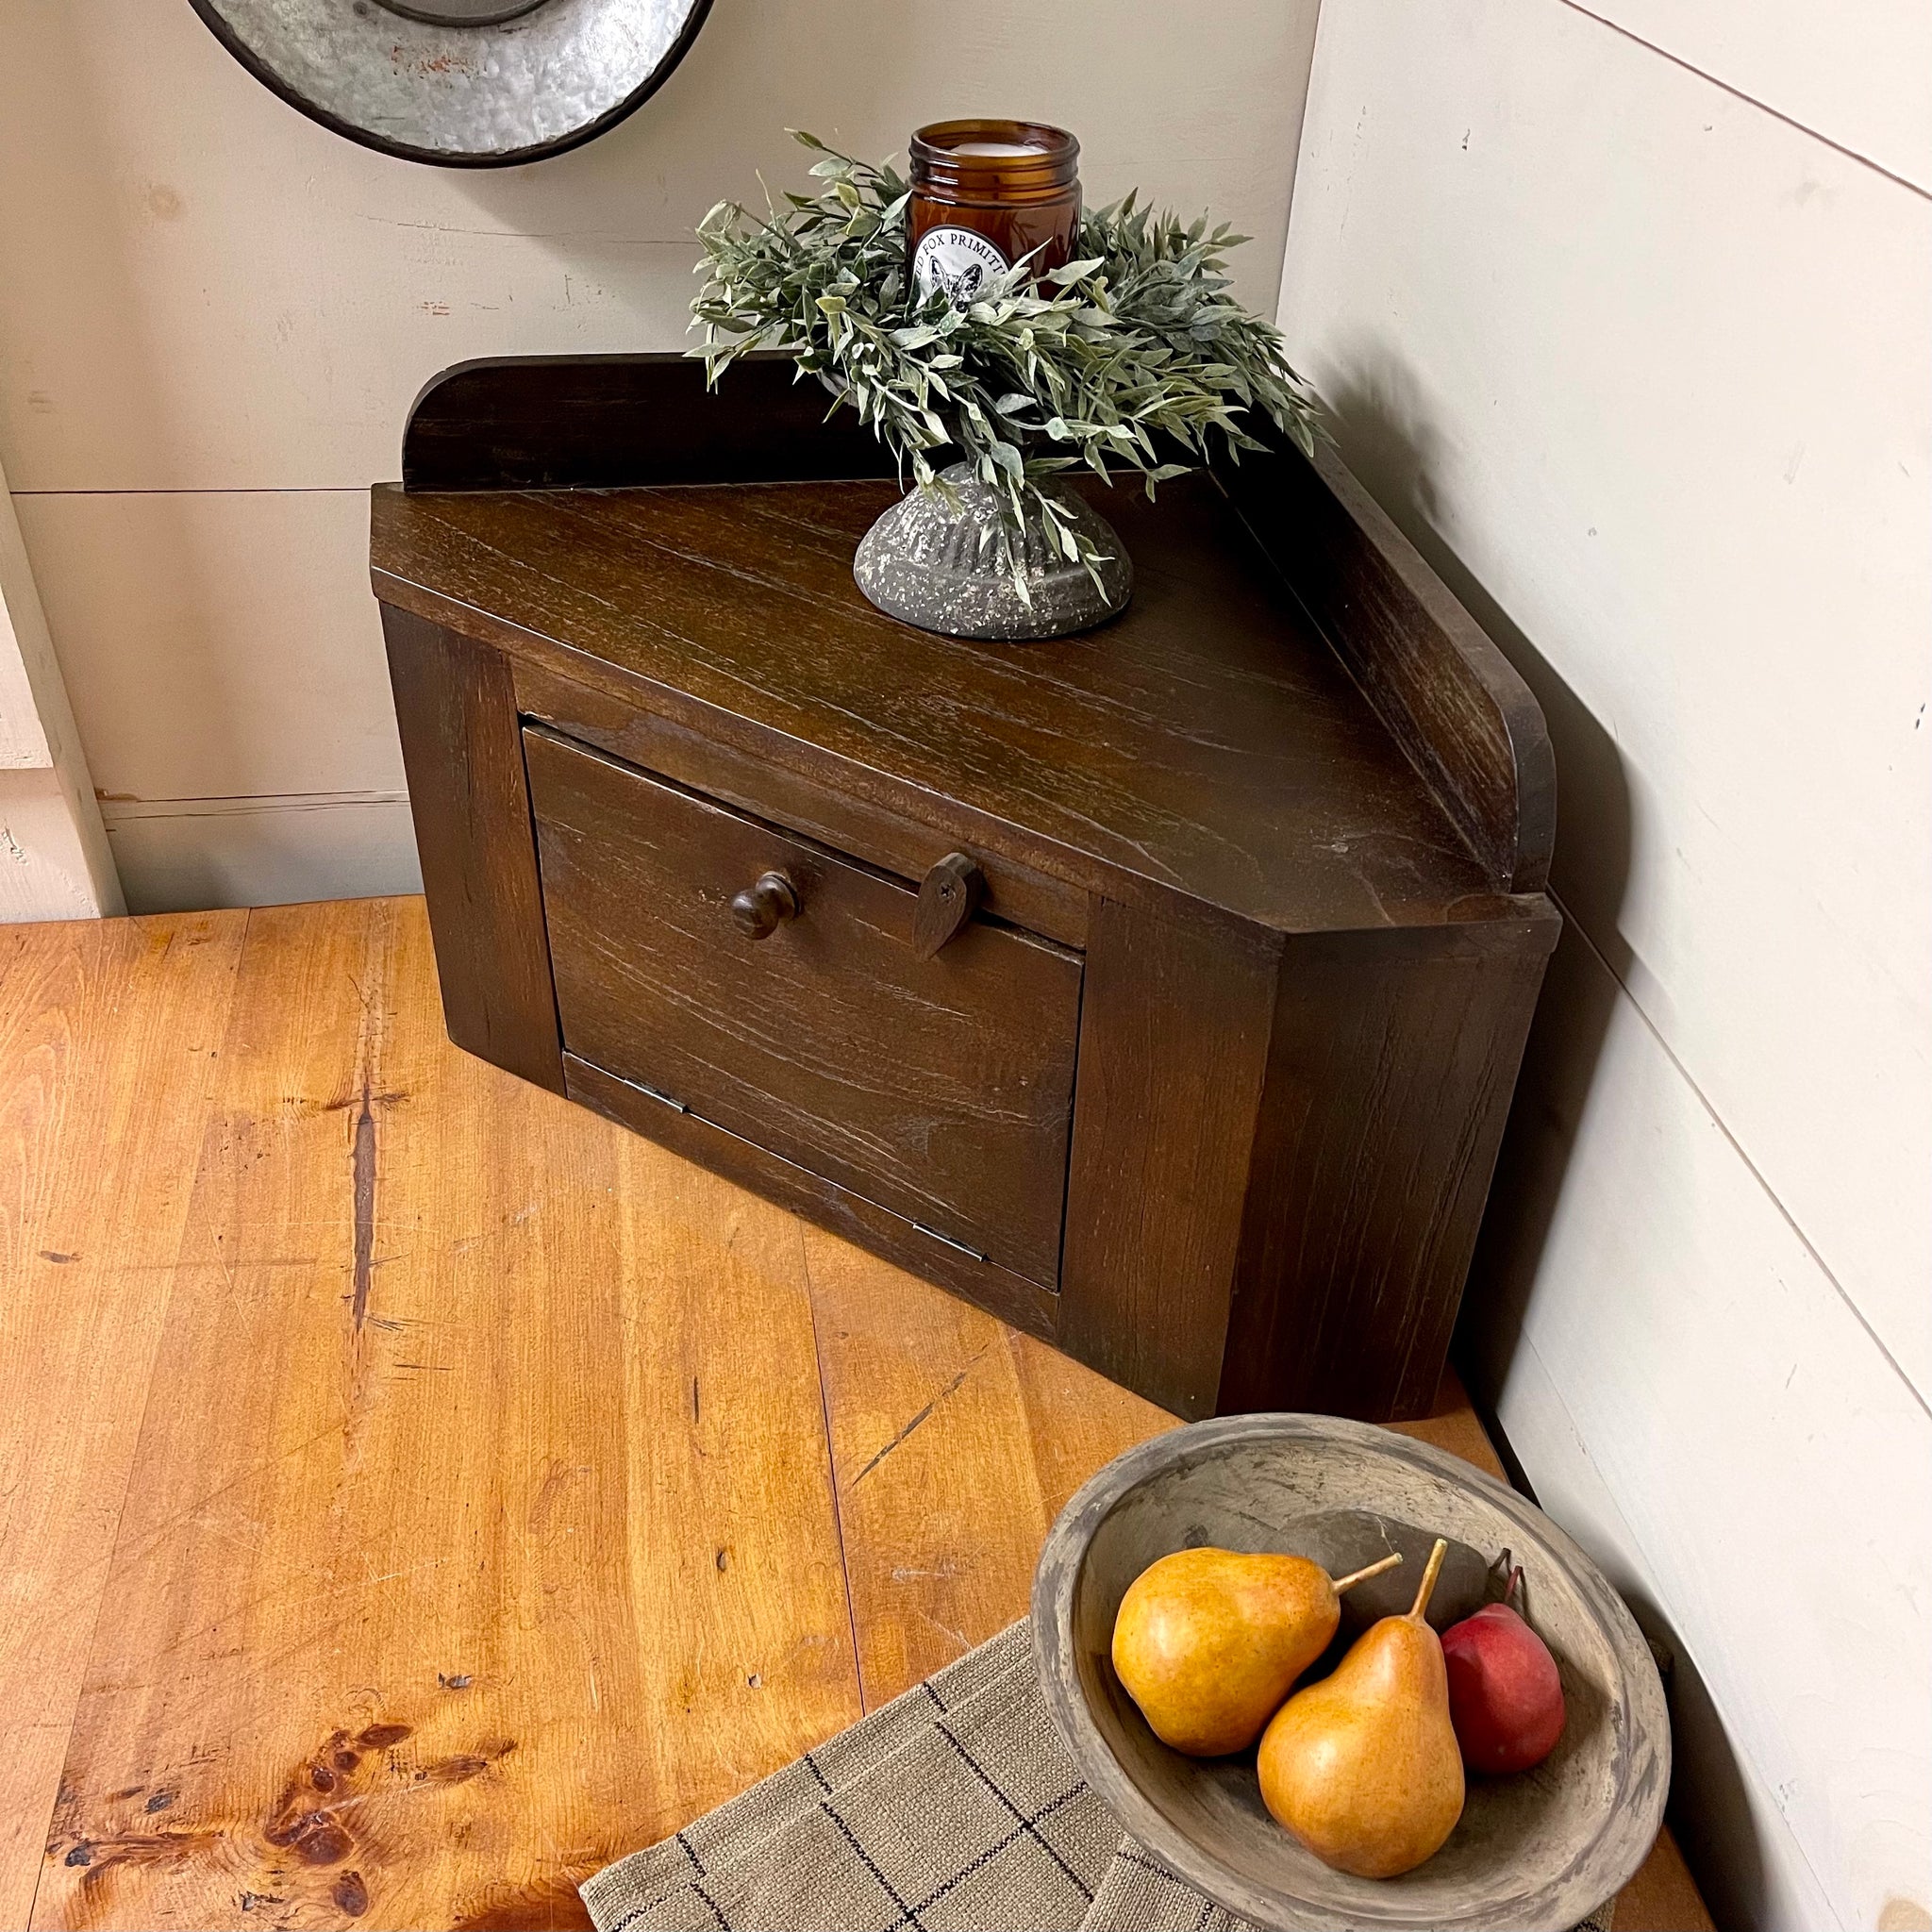 Countertop Corner Cupboard | Rustic Brown | Farmhouse Kitchen Decor | Limited Edition